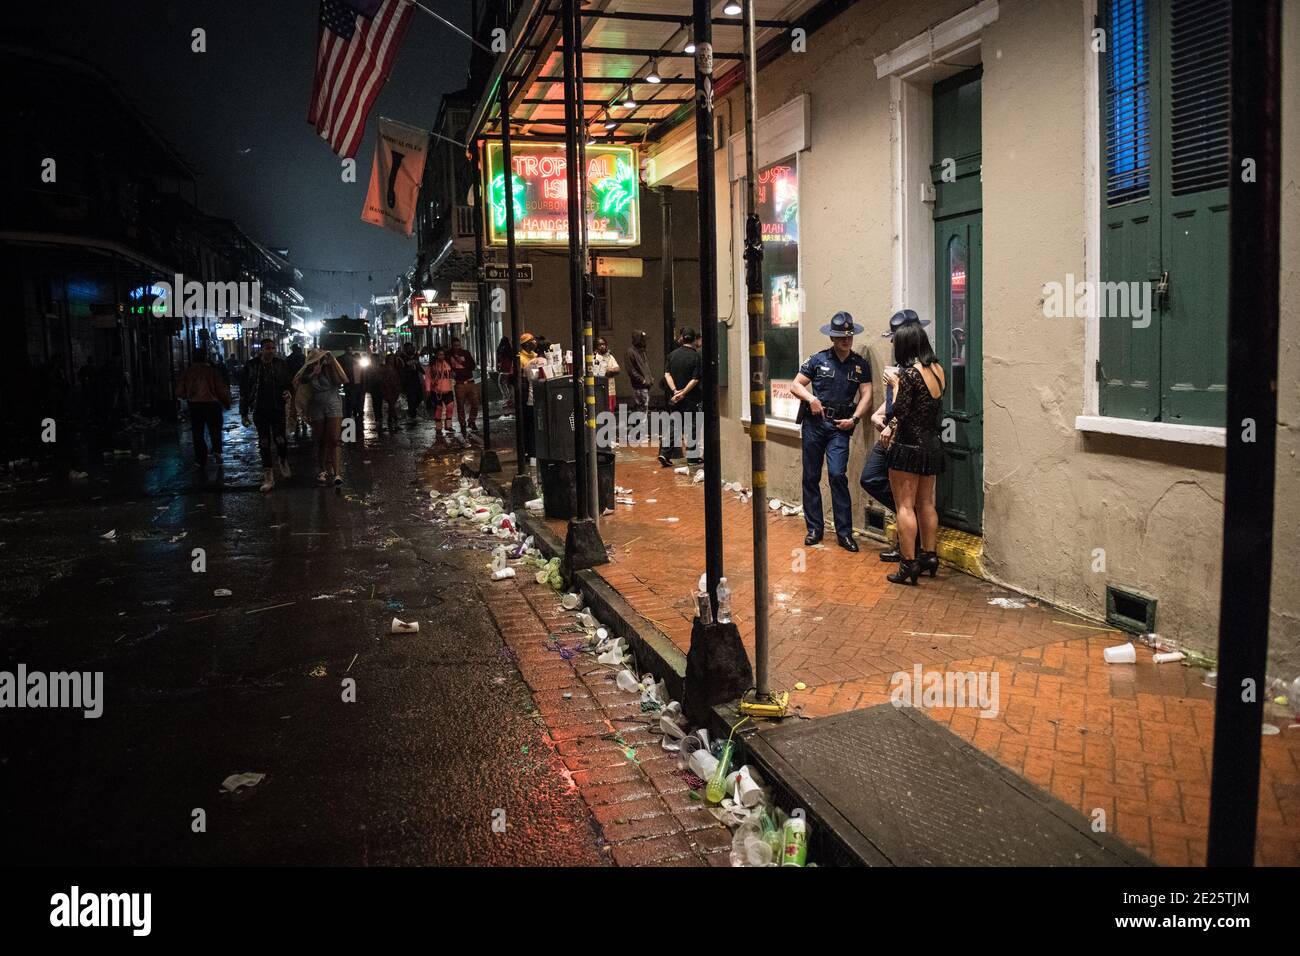 Patrouille de police sur Bourbon Street tard dans la nuit Mardi gras, Nouvelle-Orléans, Louisiane, États-Unis. Banque D'Images